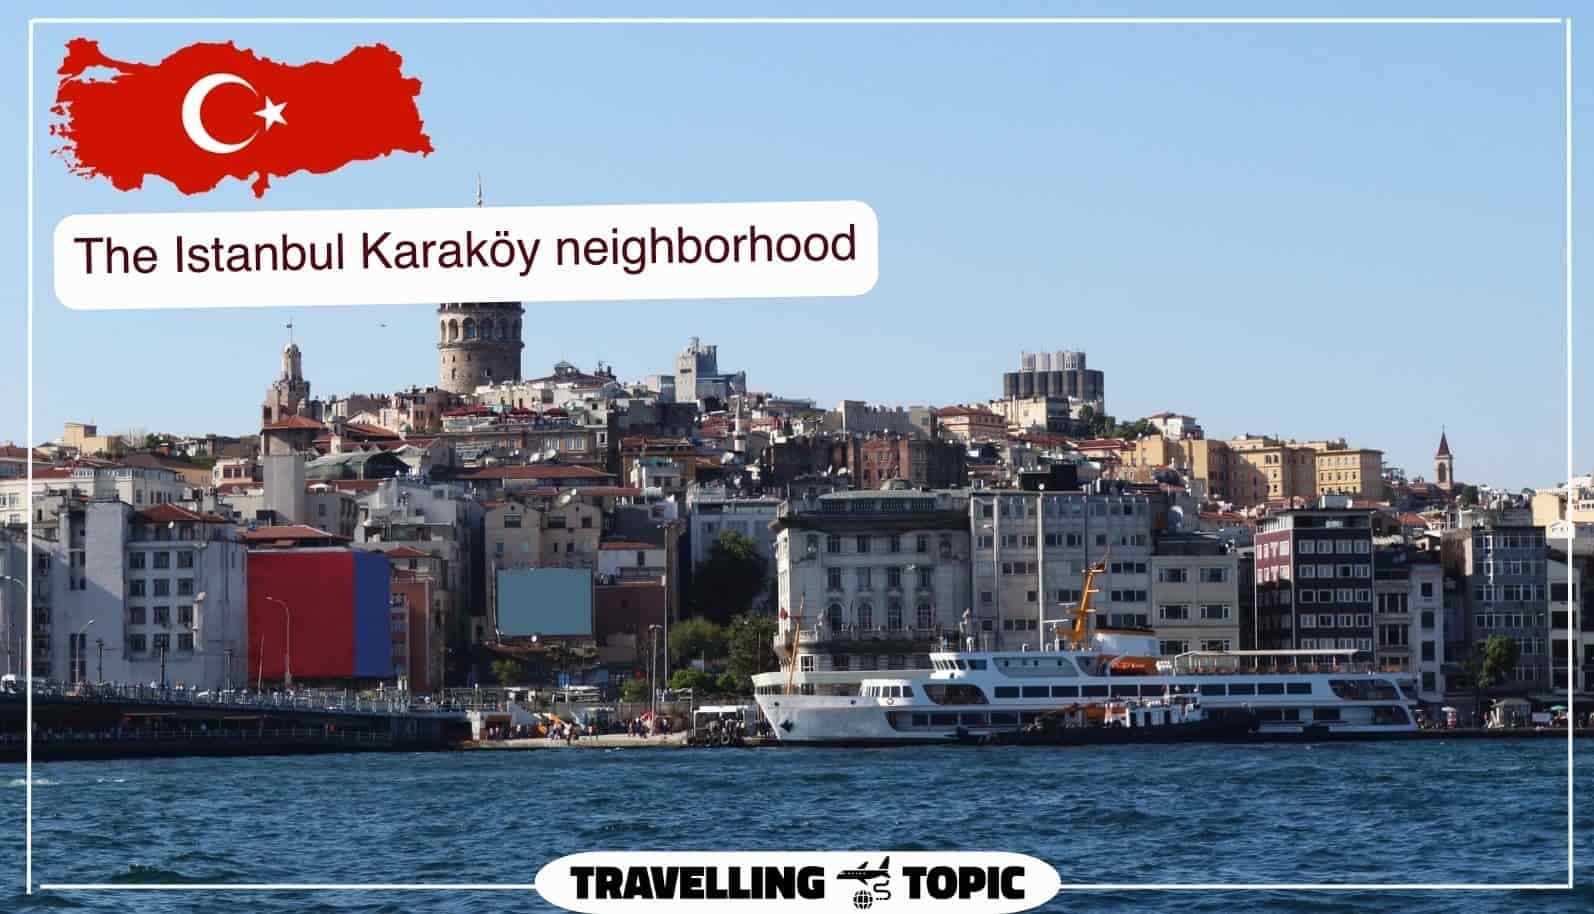 The Istanbul Karaköy neighborhood